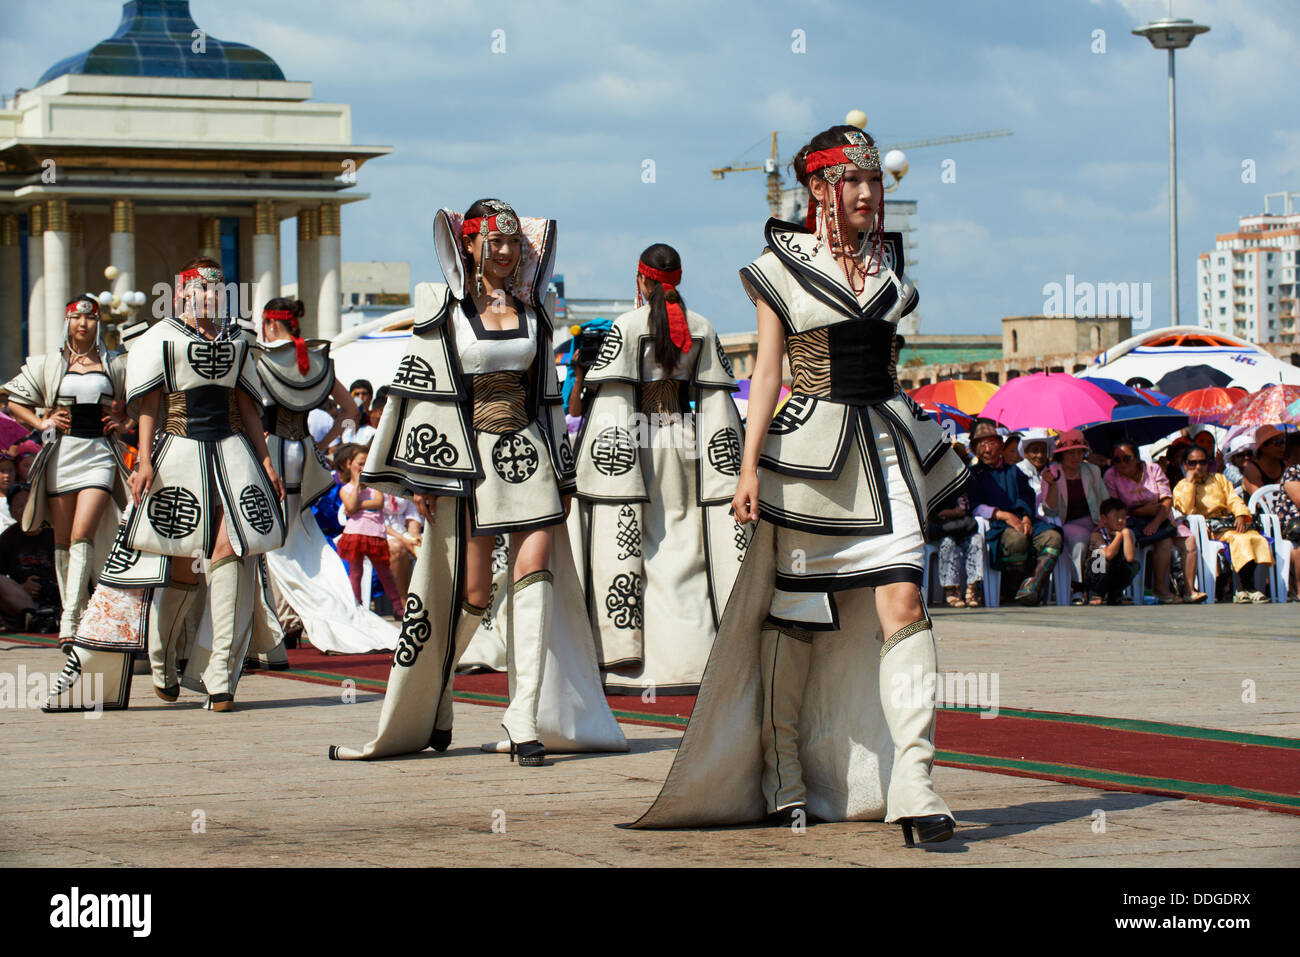 Mongolei, Ulan Bator, Sukhbaatar Platz, Kostüm-Parade für das Naadam